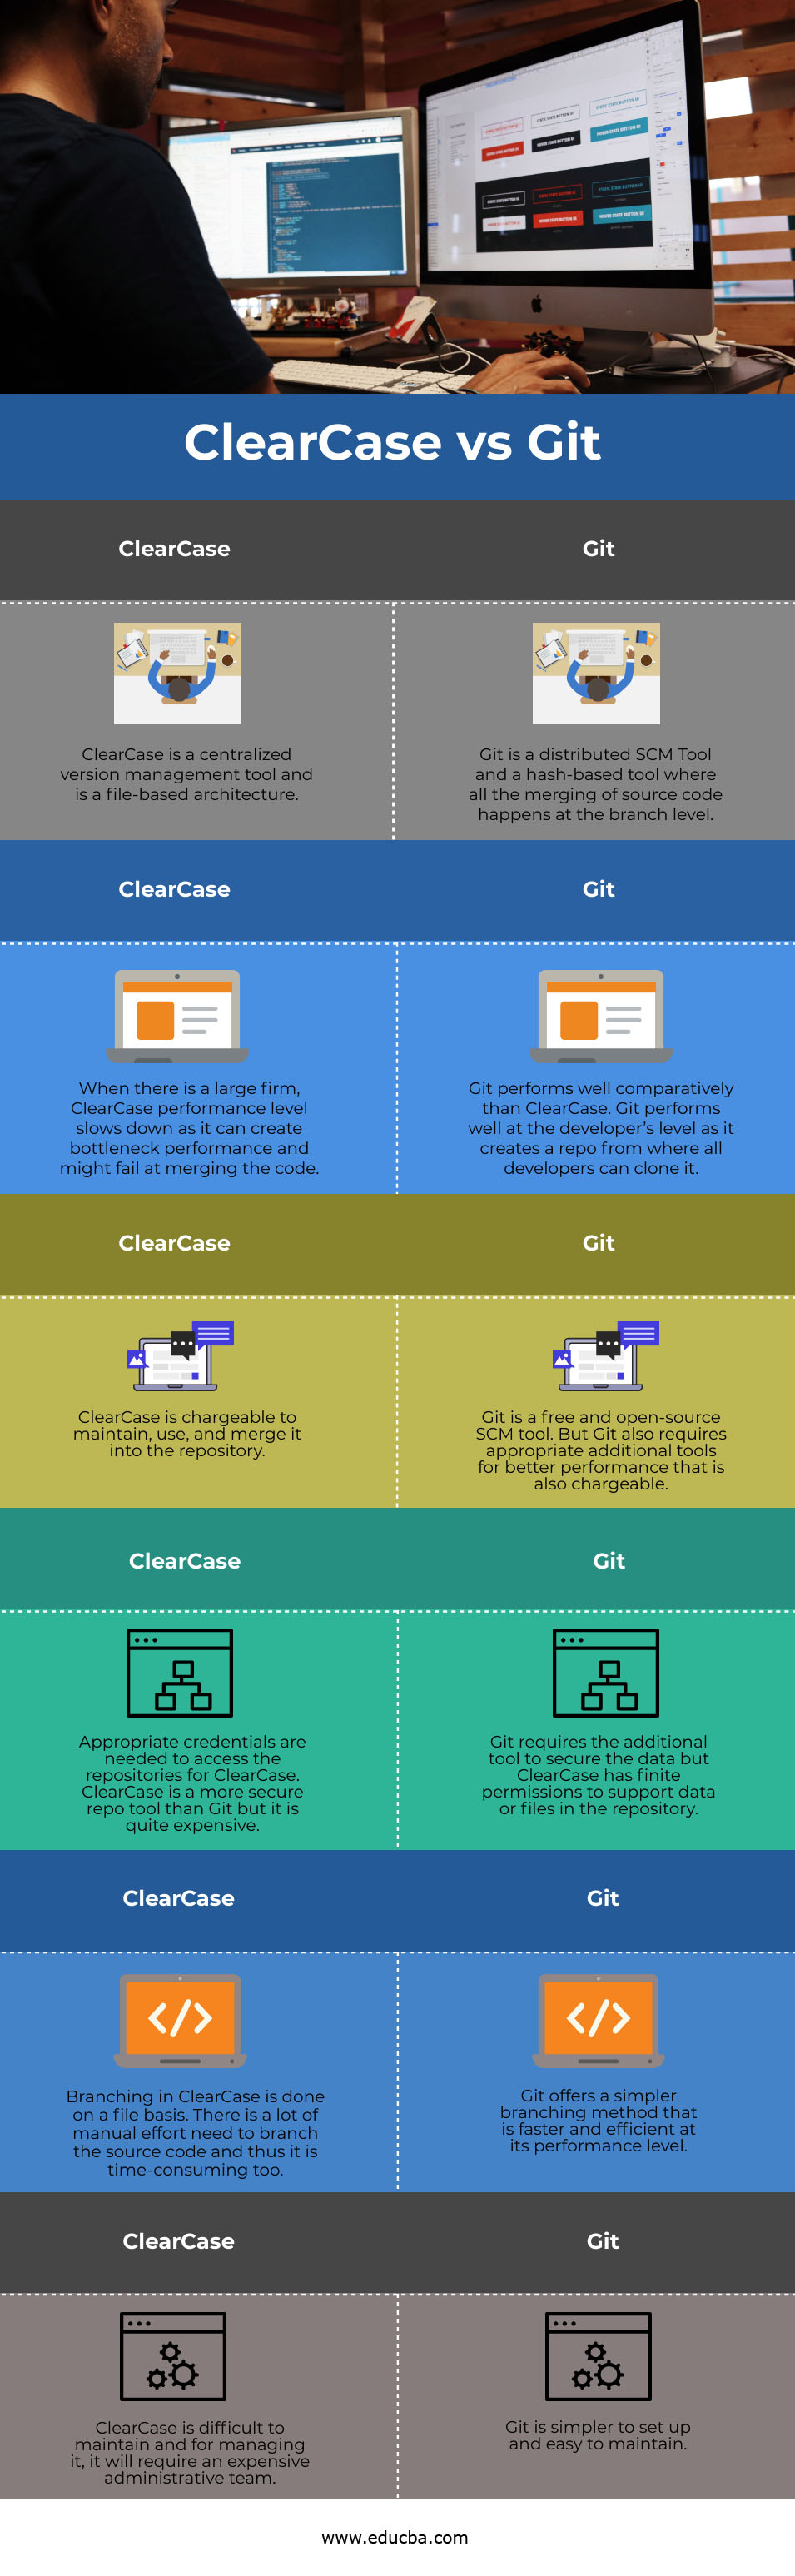 ClearCase vs Git info